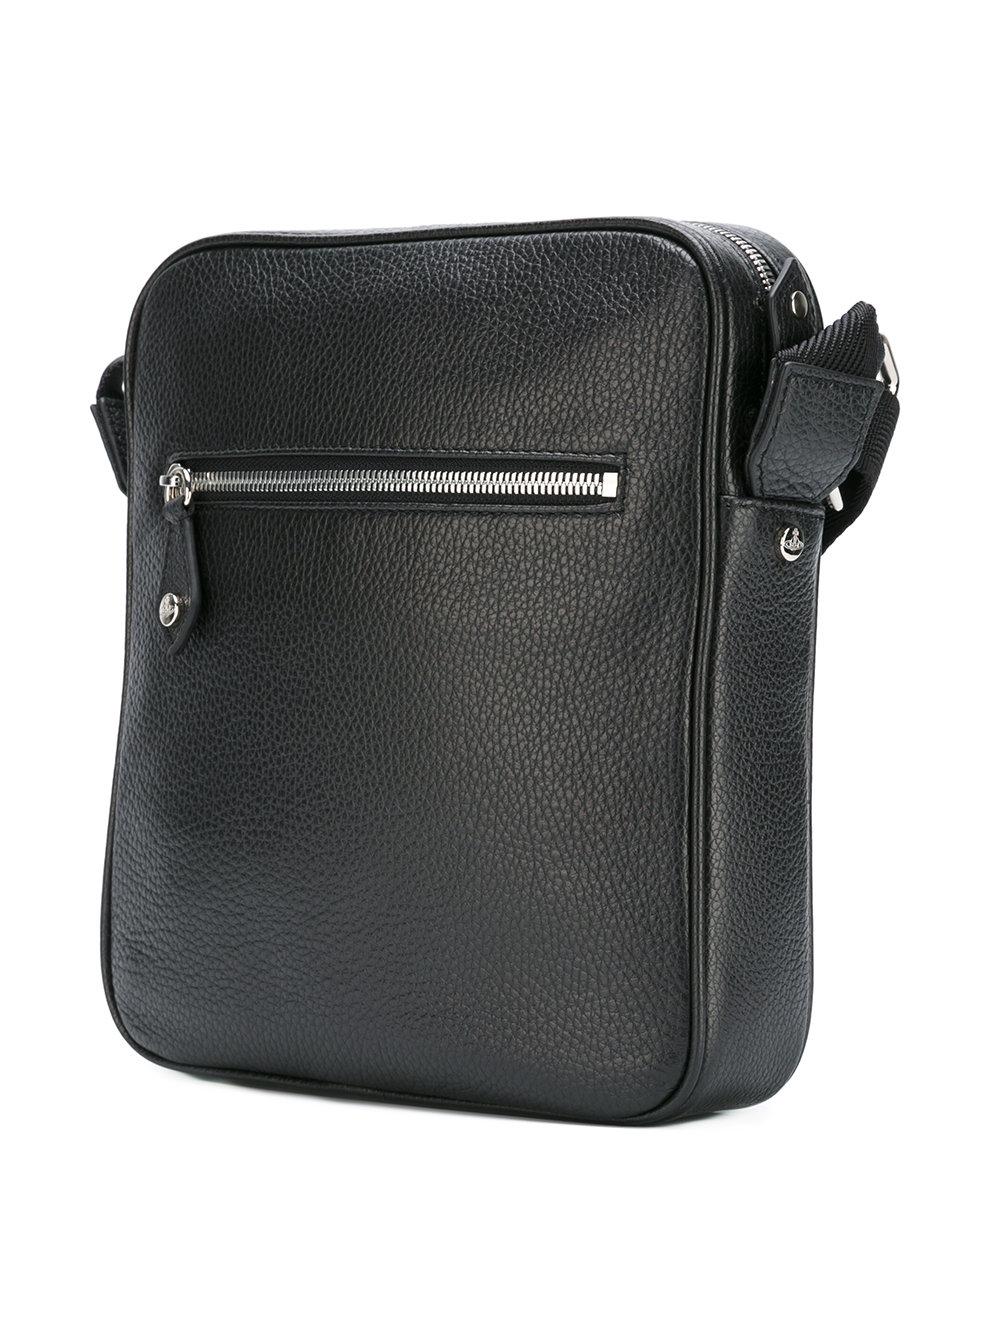 Lyst - Vivienne westwood Logo Pin Messenger Bag in Black for Men